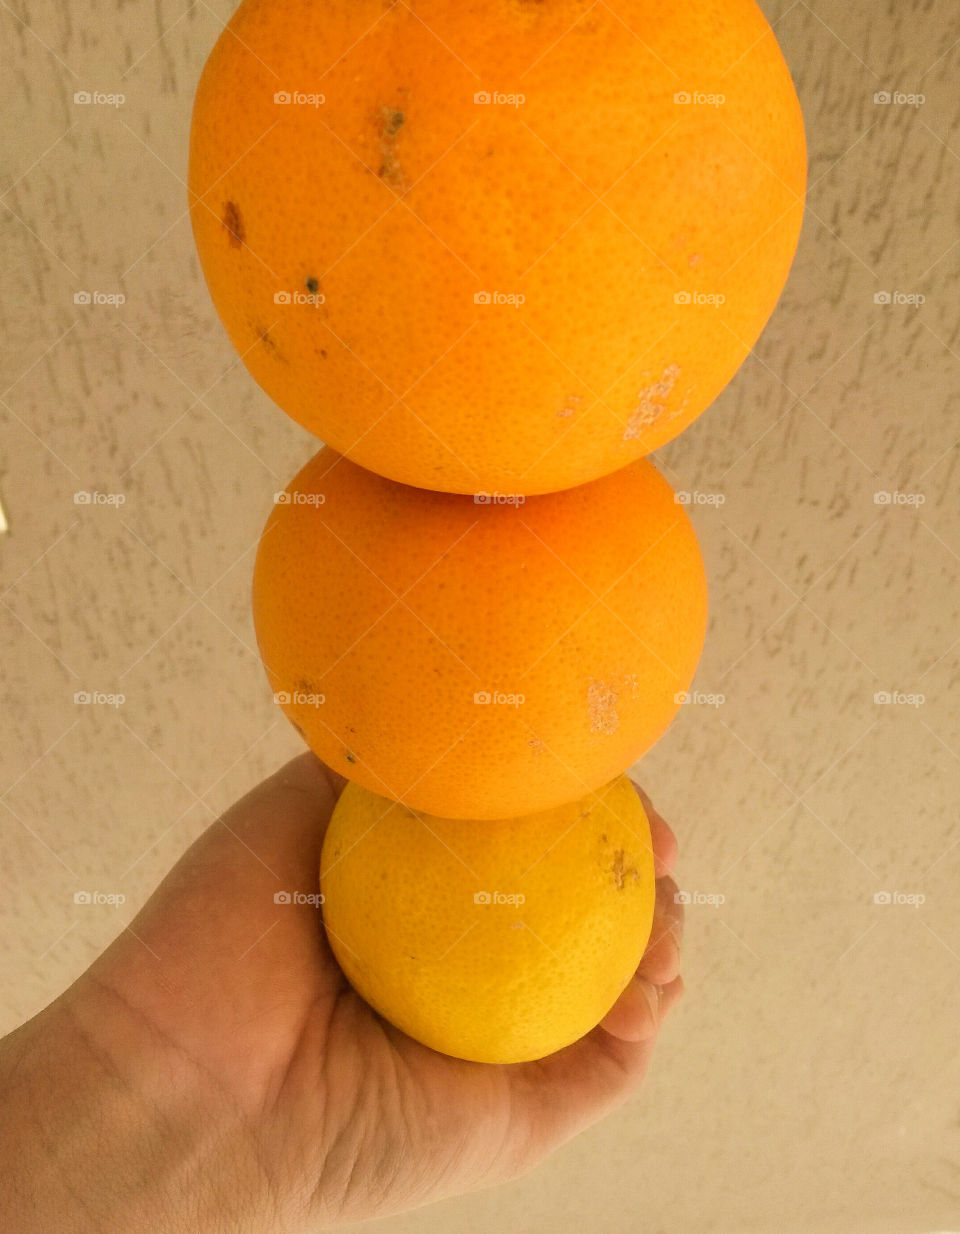 optical illusion of hand holding 1 lemon and 1 orange